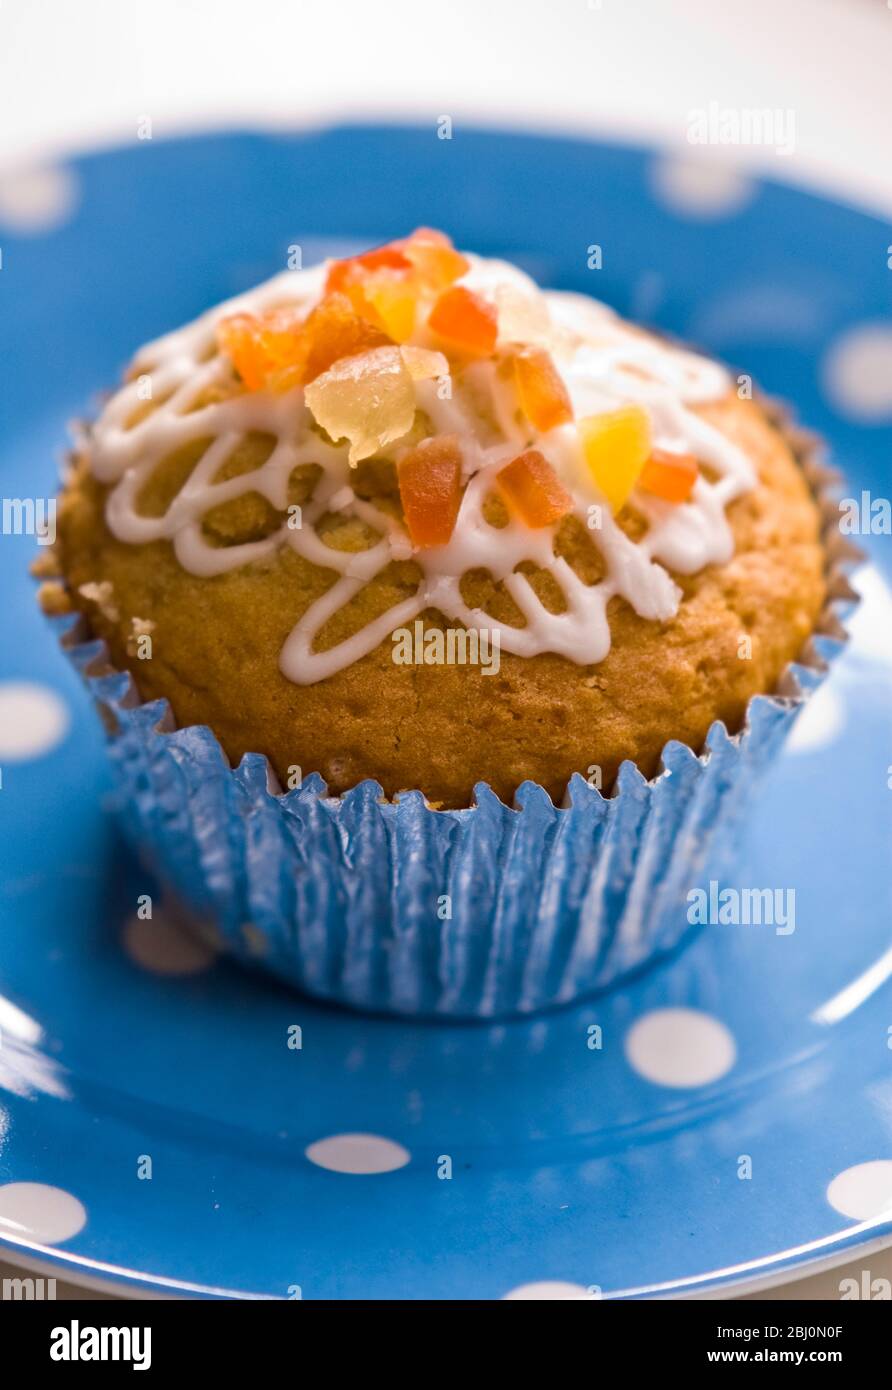 Muffin mit Squiggly Eisbildung und kandierten Schale auf gepunkteten blauen Teller verziert - Stockfoto